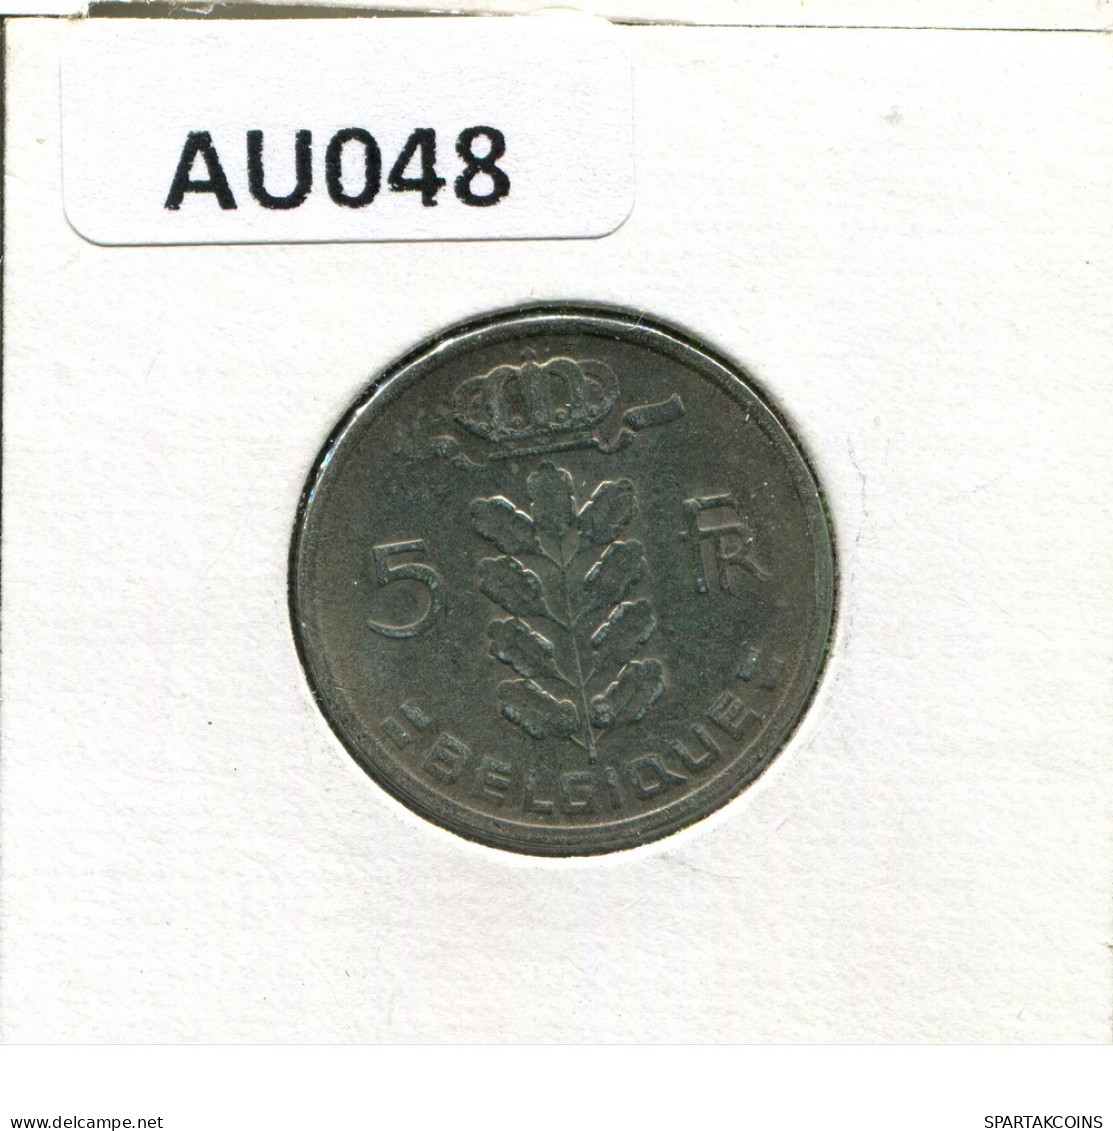 5 FRANCS 1968 FRENCH Text BELGIQUE BELGIUM Pièce #AU048.F.A - 5 Francs